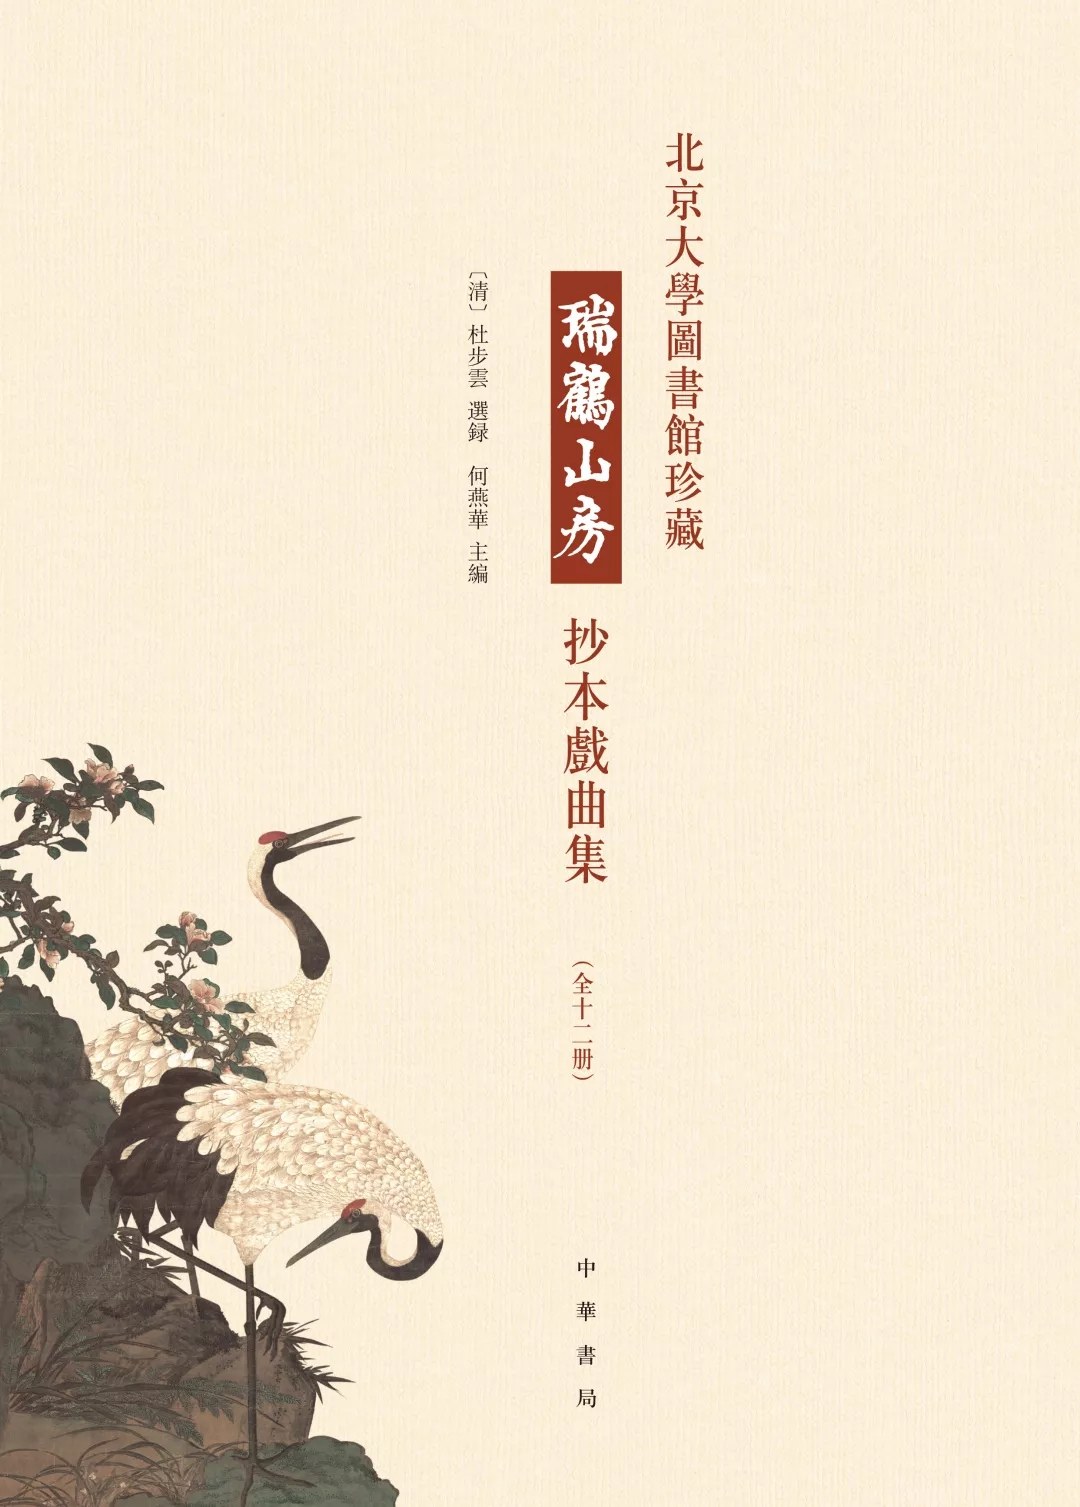 北京大学图书馆珍藏瑞鹤山房抄本戏曲集 第十册